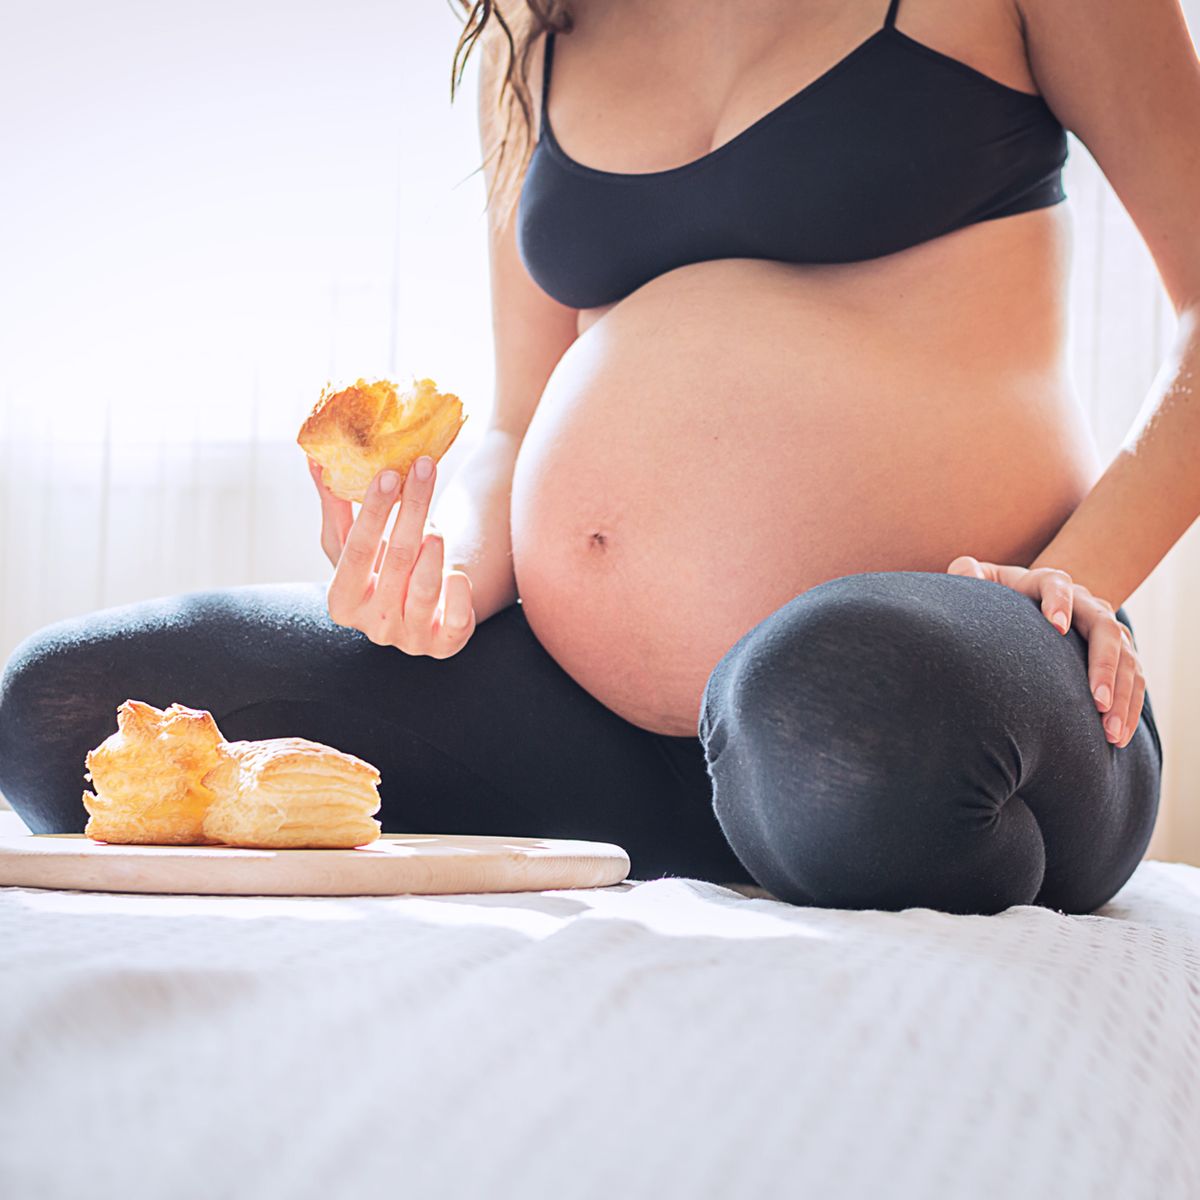 30 недель б. 30 Недель беременности фото. Питание для беременных на 30 недели.